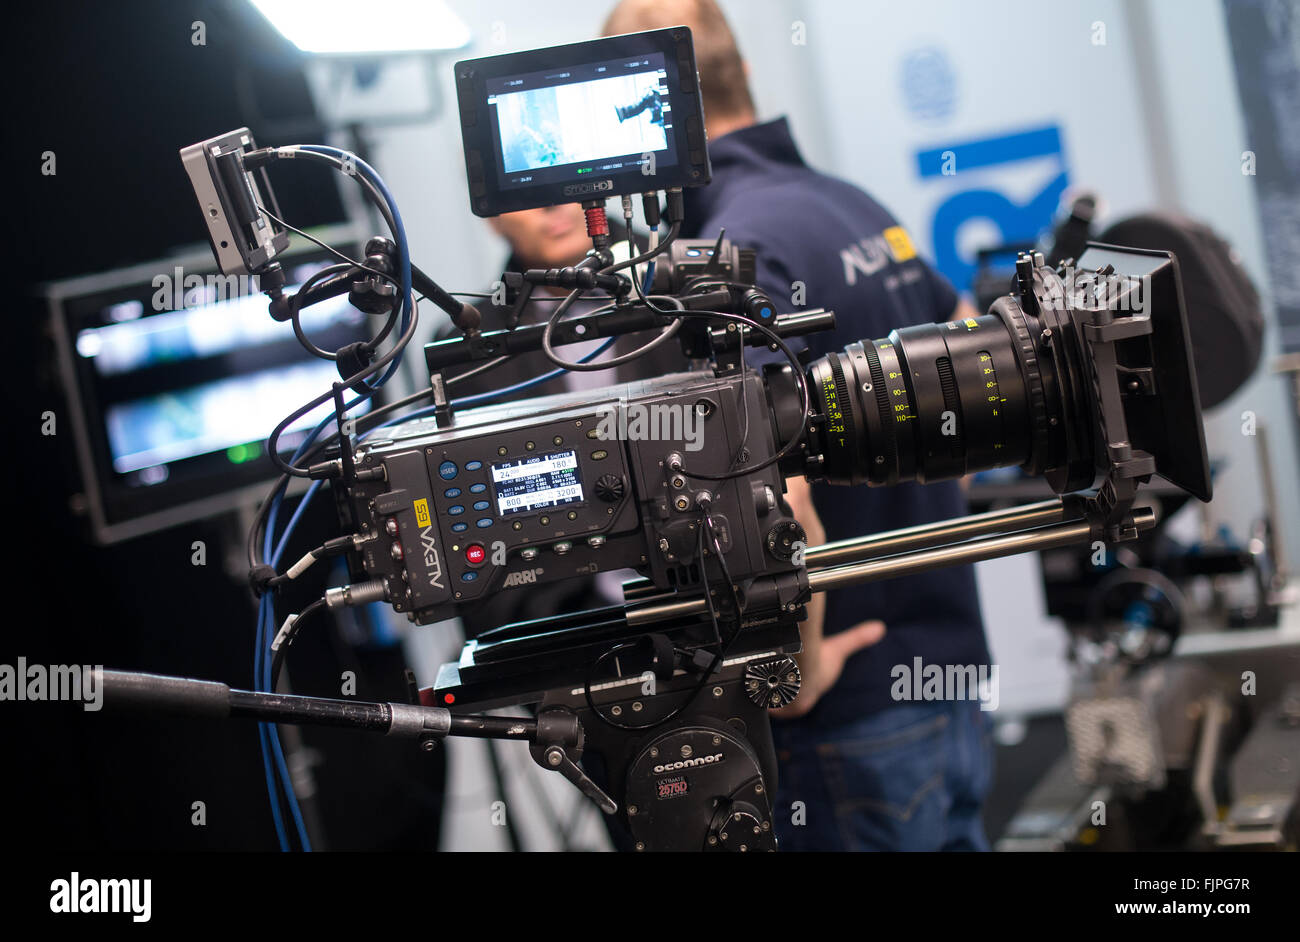 Munich, Alemania. 03Rd Mar, 2016. La Alexa 65 cámara de cine digital film  technology company Arri puede verse en un estudio en Munich, Alemania, el  03 de marzo de 2016. El ganador